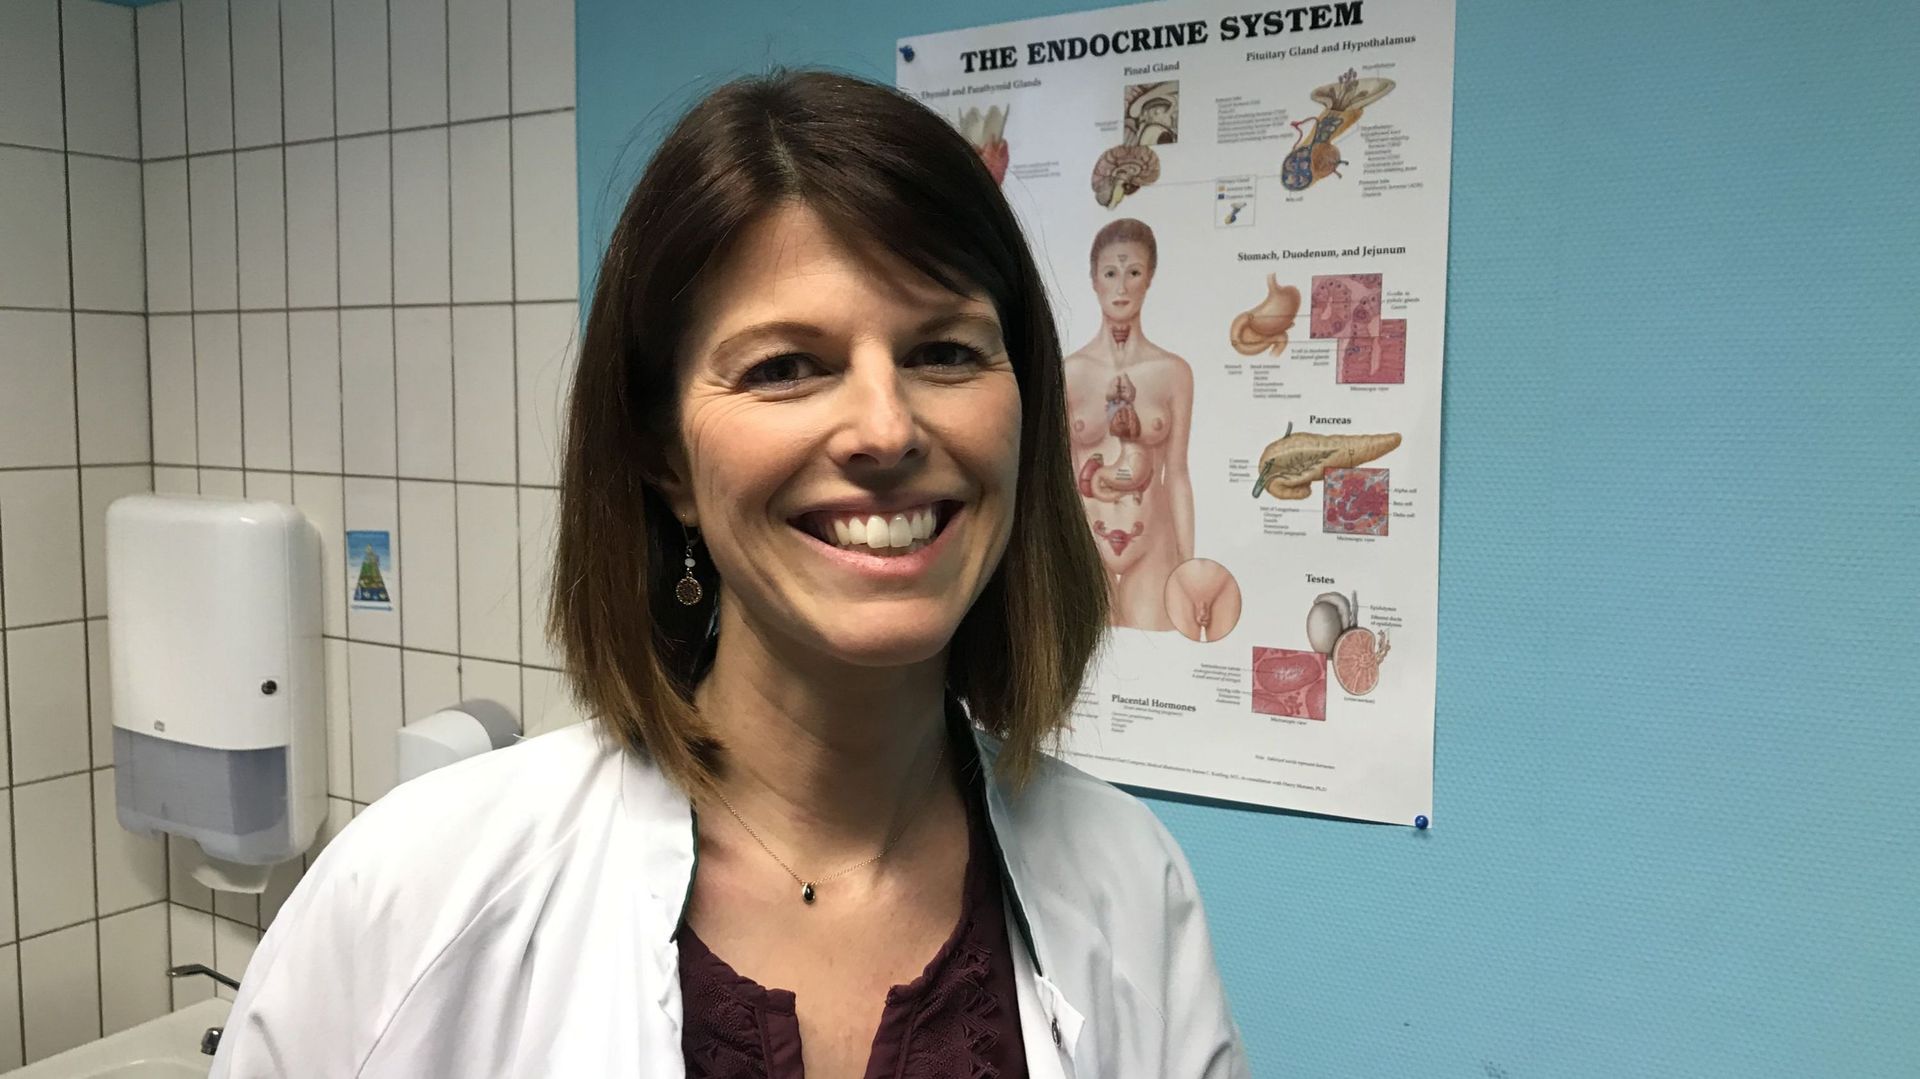 Le Dr Vincianne Thielen, endocrinologue au CHR de Liège